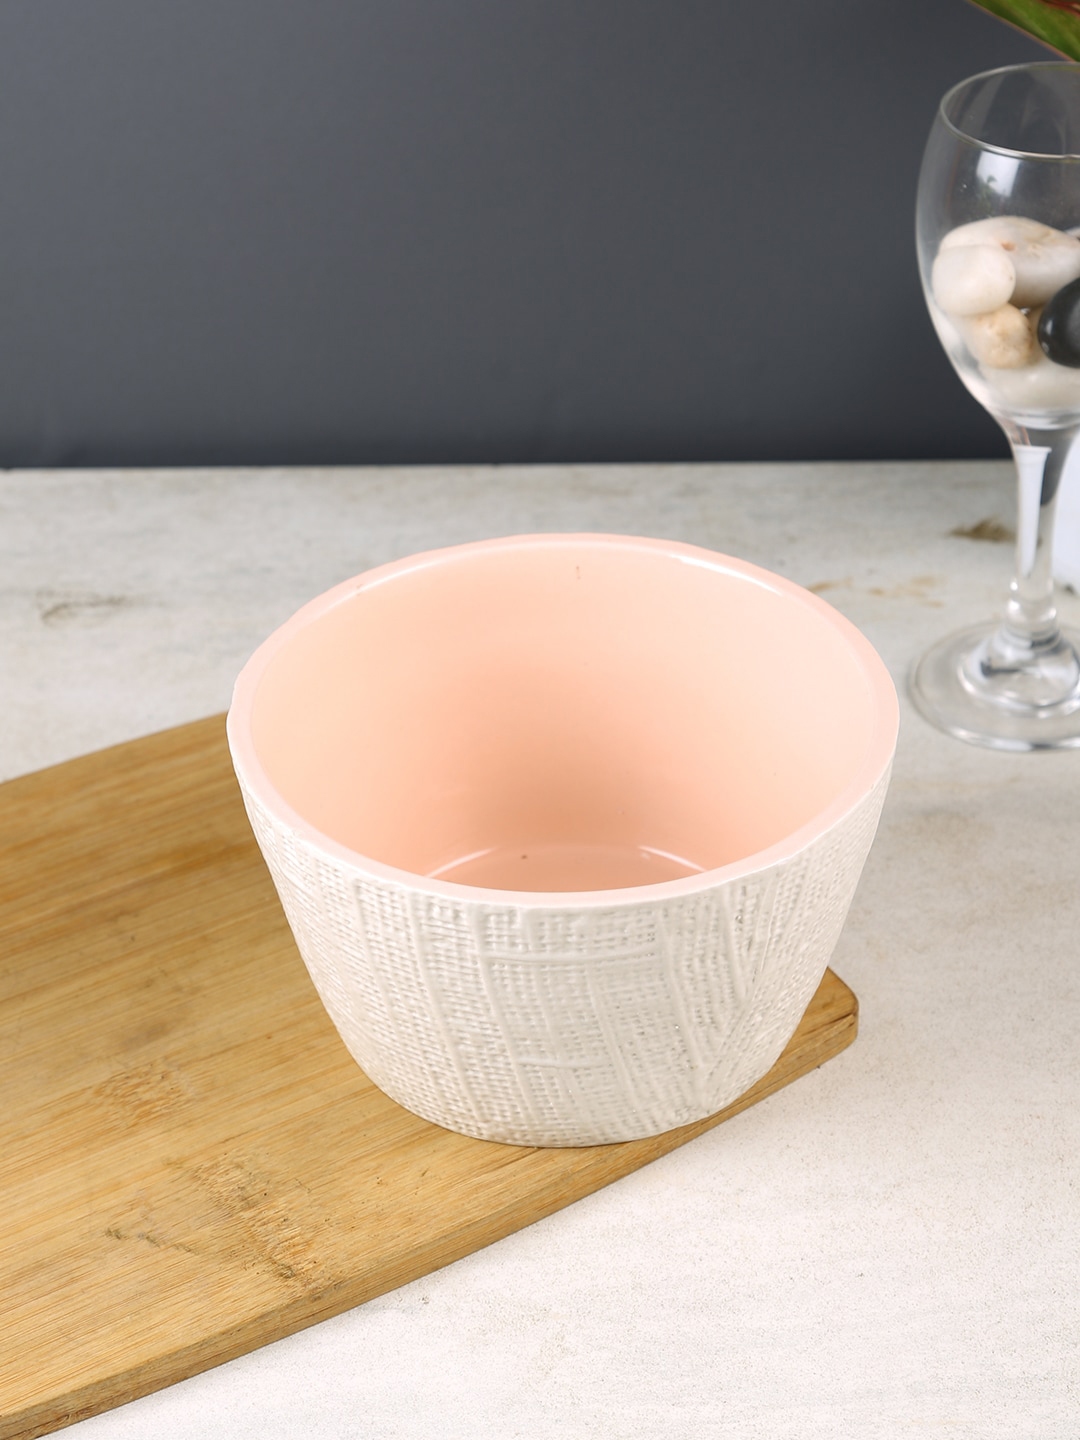 Aapno Rajasthan Set Of 2 Pink & White Textured Ceramic Bowls